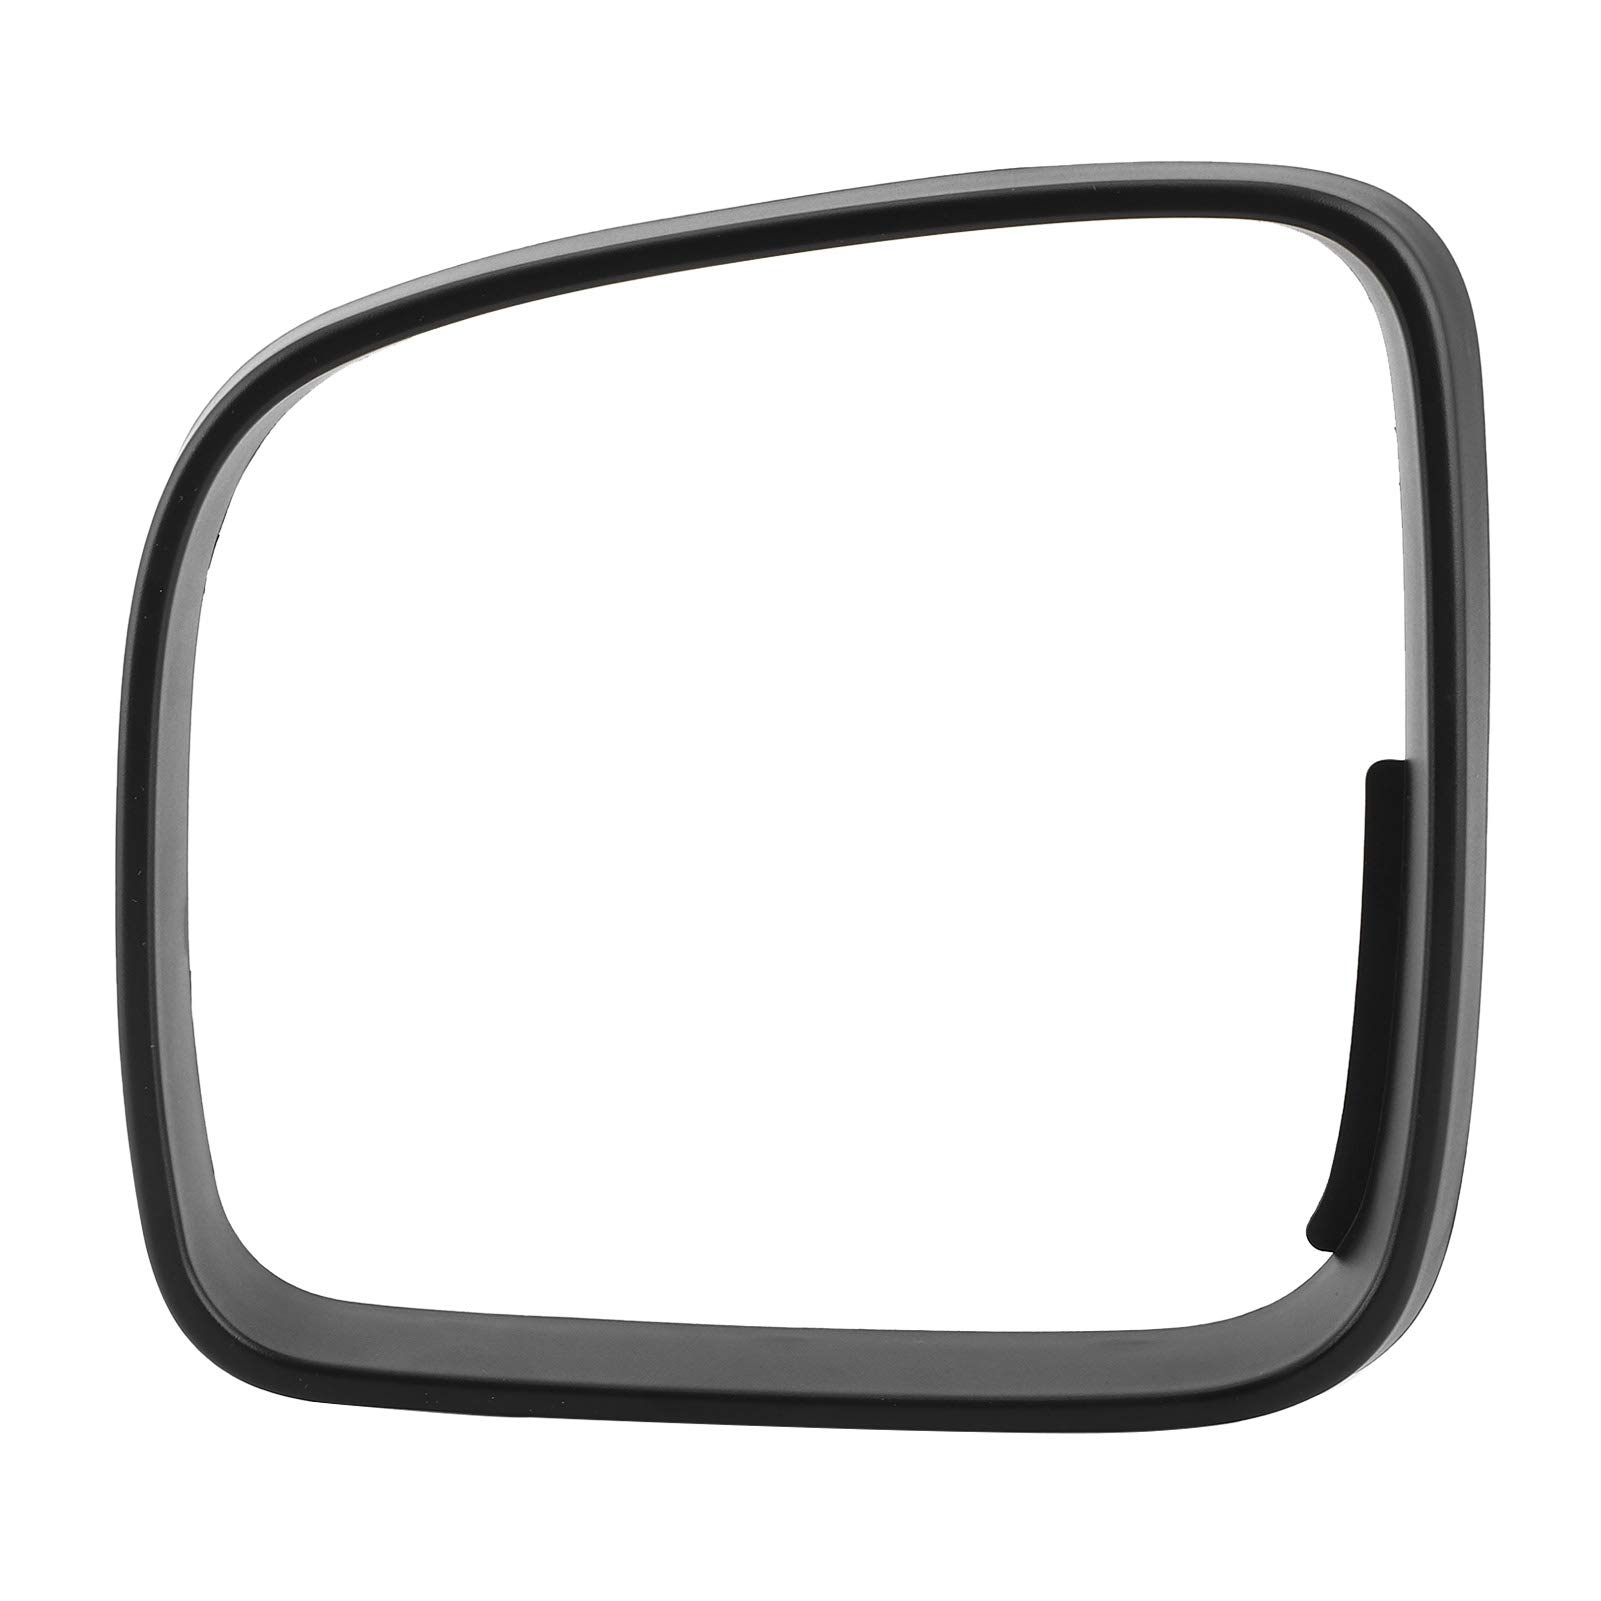 Deror Türspiegelrahmen Rückspiegelrahmenverkleidung Türspiegelblende Abdeckung Zubehör Fit für Transporter T5/Caddy/Maxi LHD(Left) von Deror